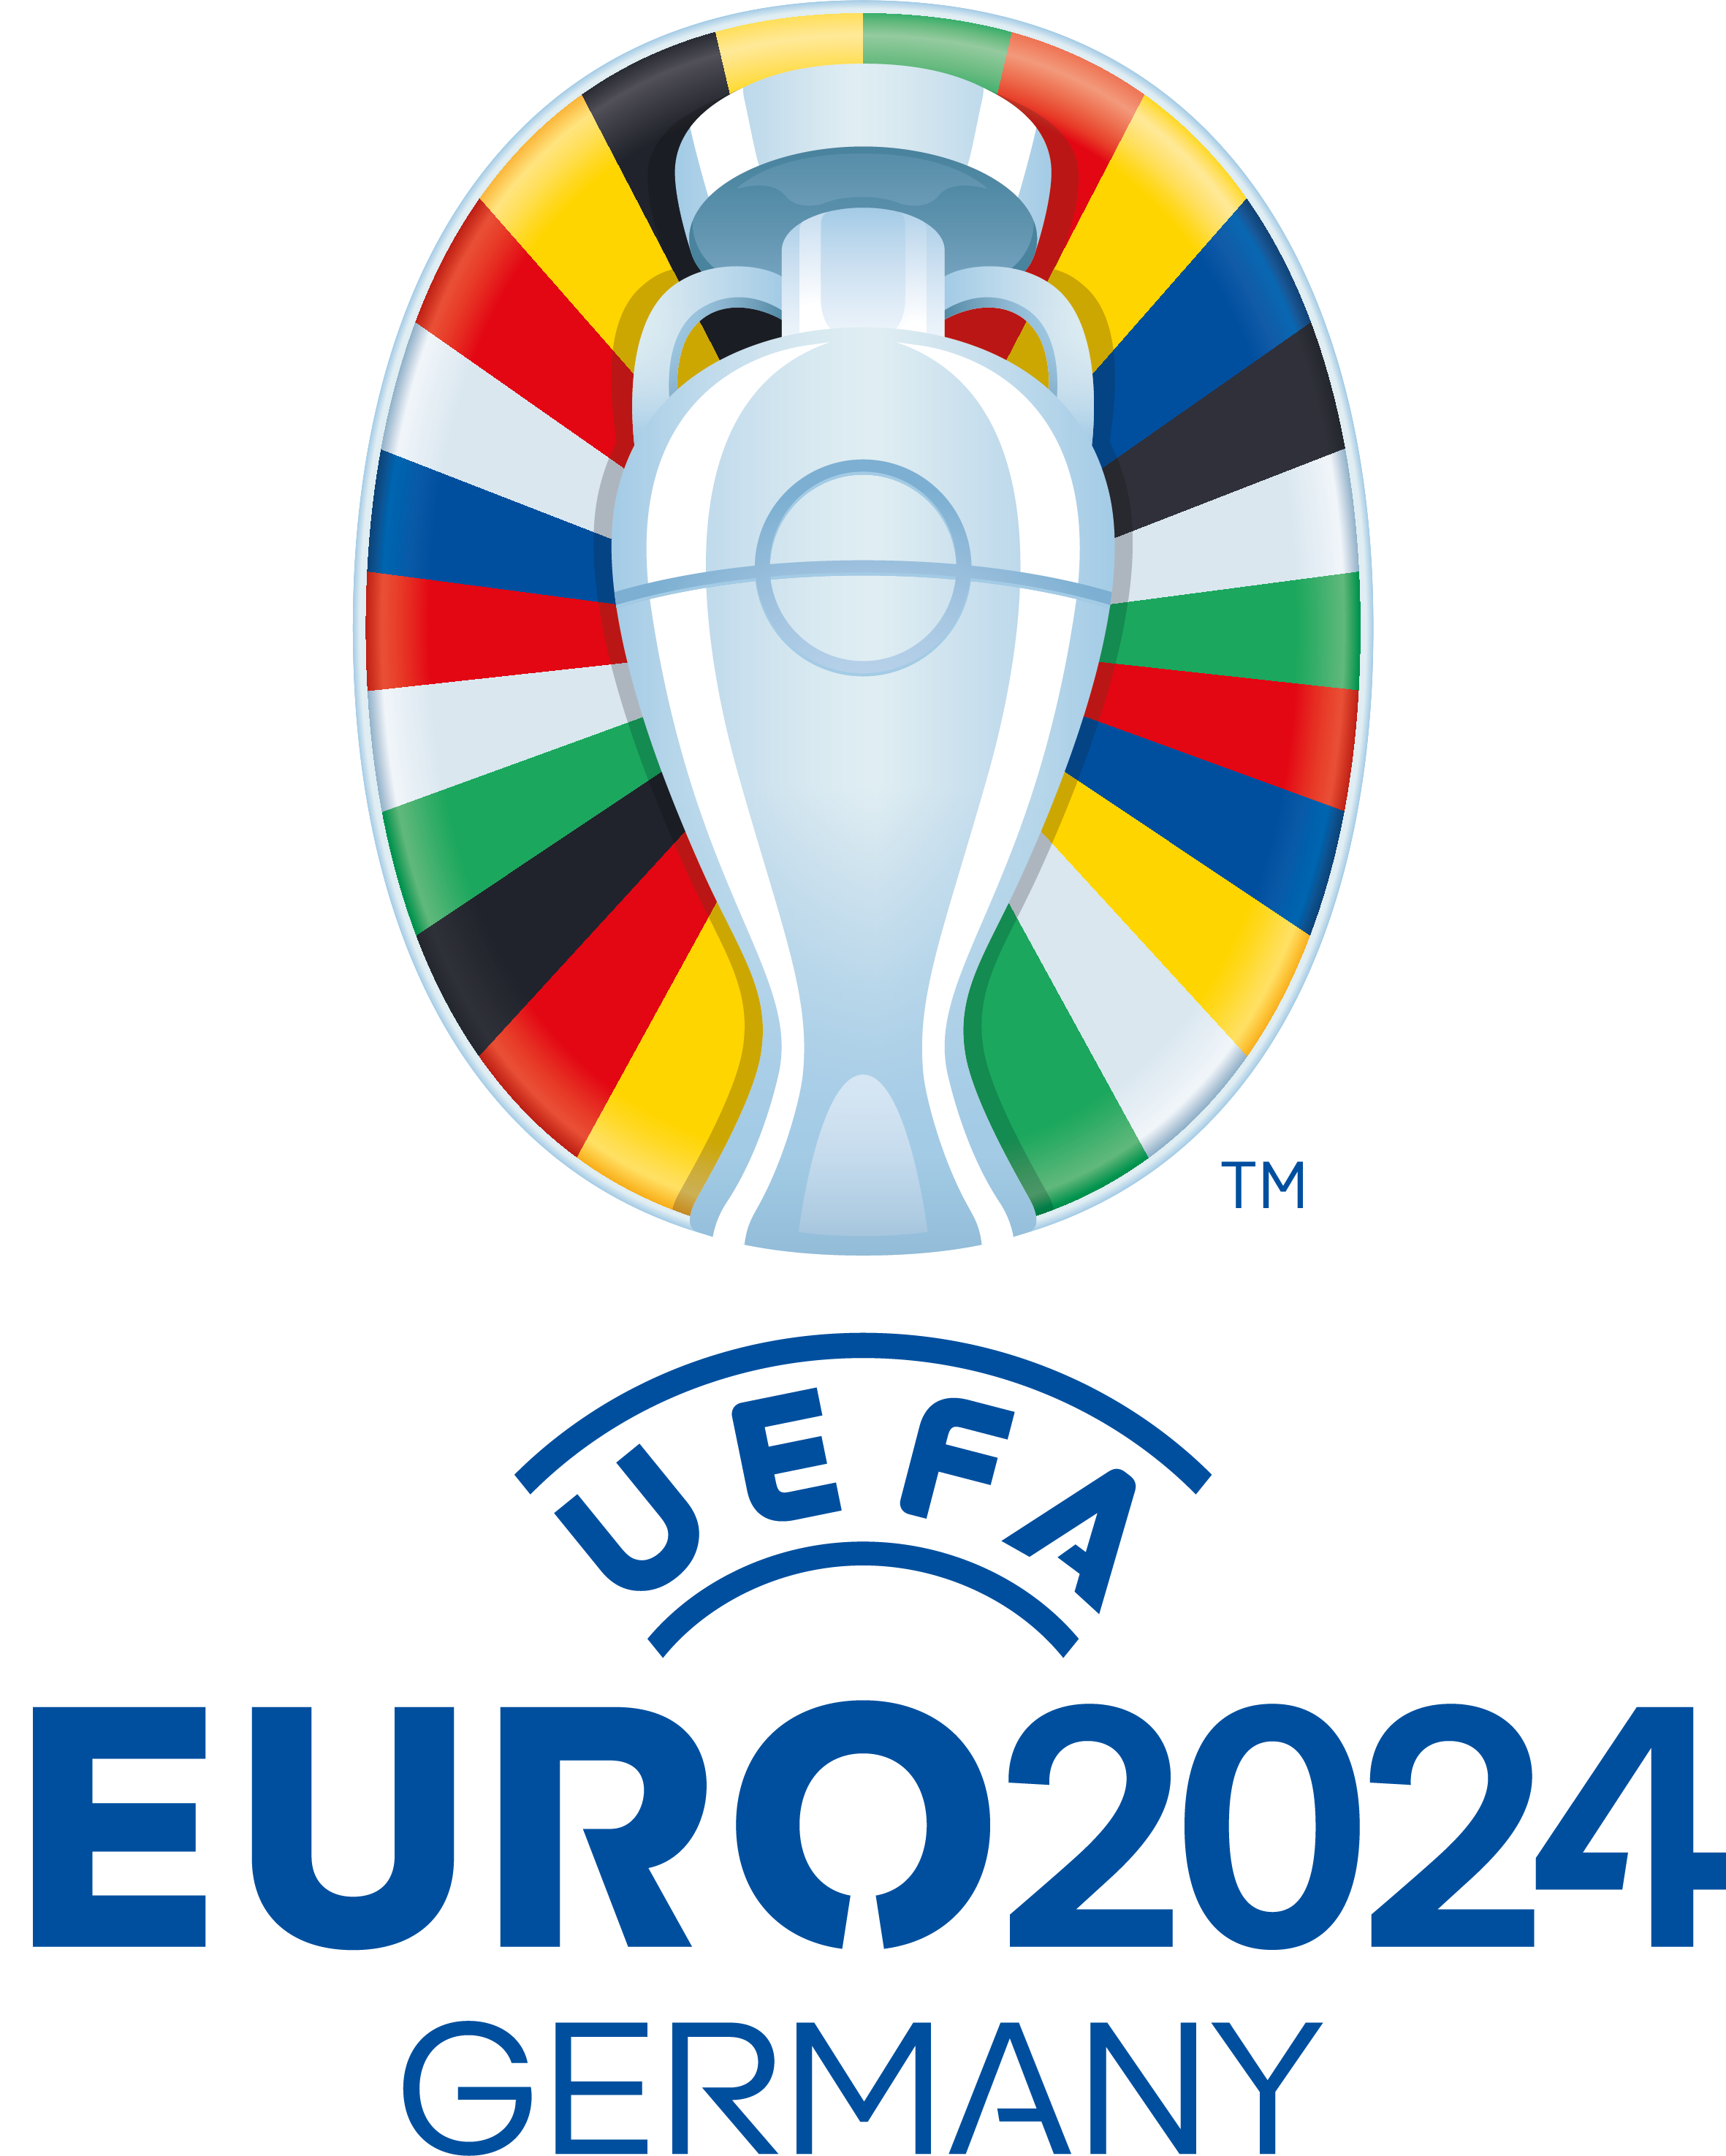 Euro 2024: Khi nào diễn ra, tổ chức ở đâu và xem trên kênh nào?